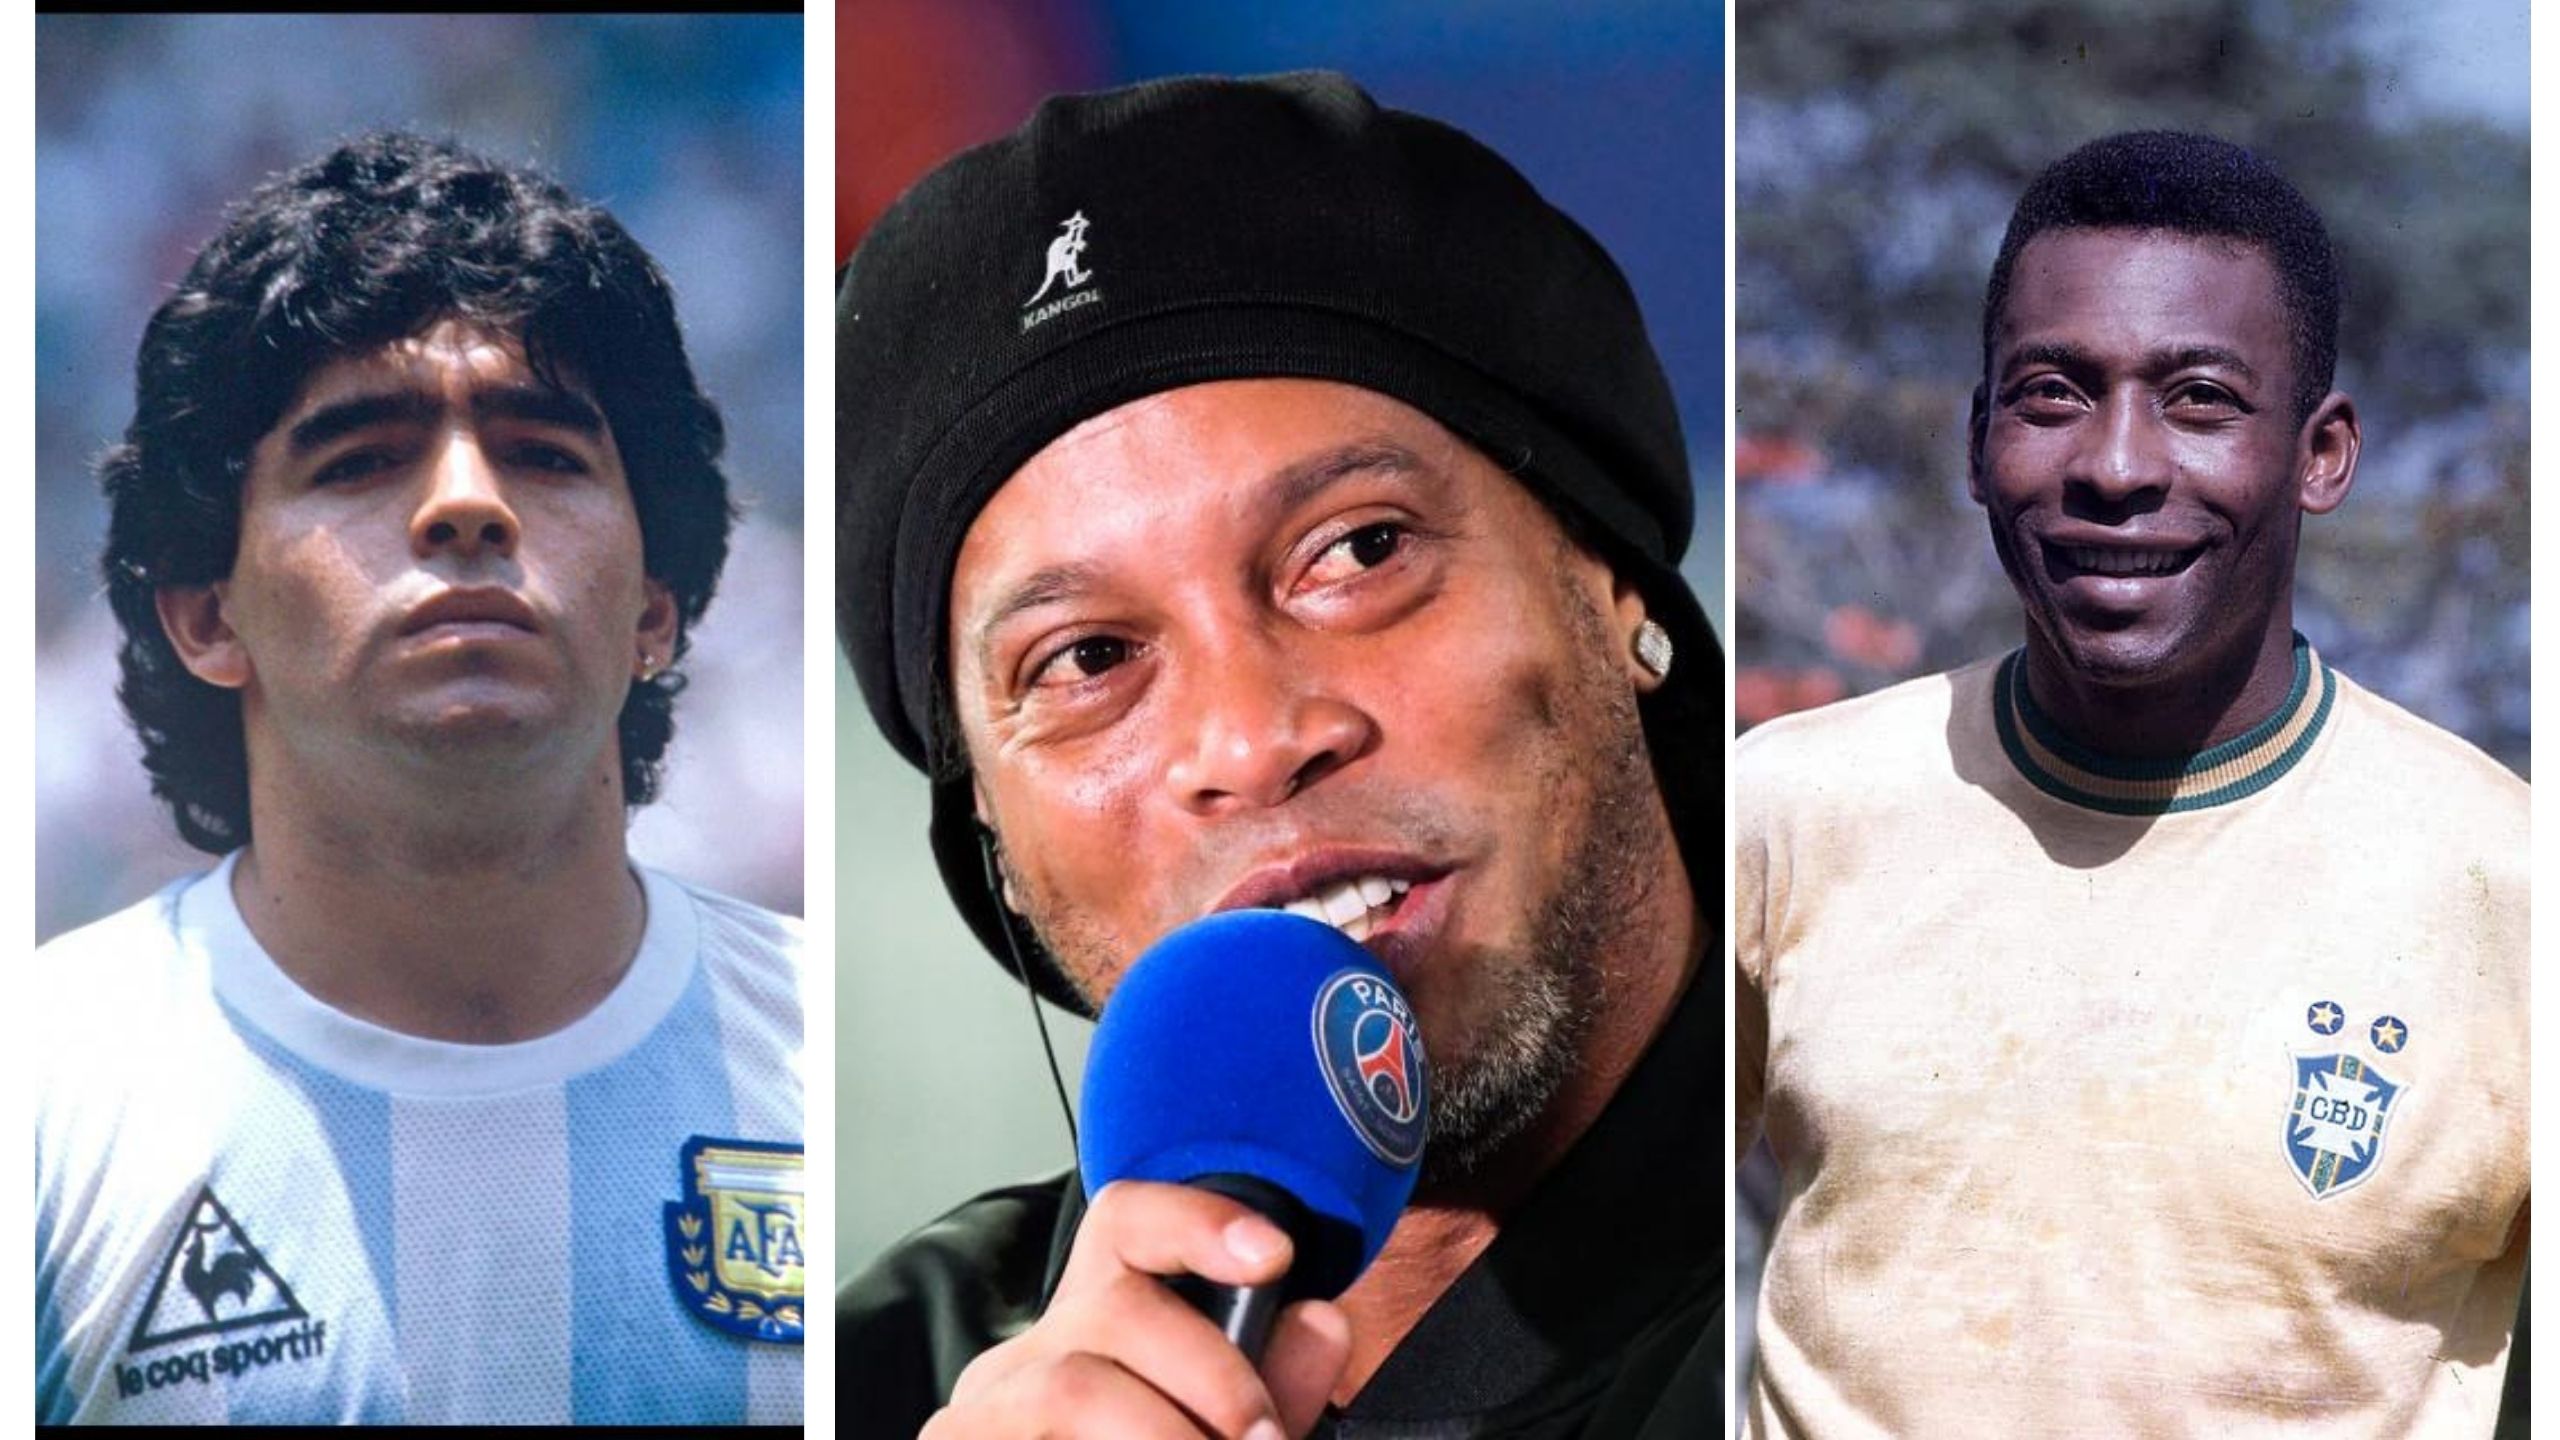 Ronaldinho était meilleur que Zidane, Pelé et Maradona